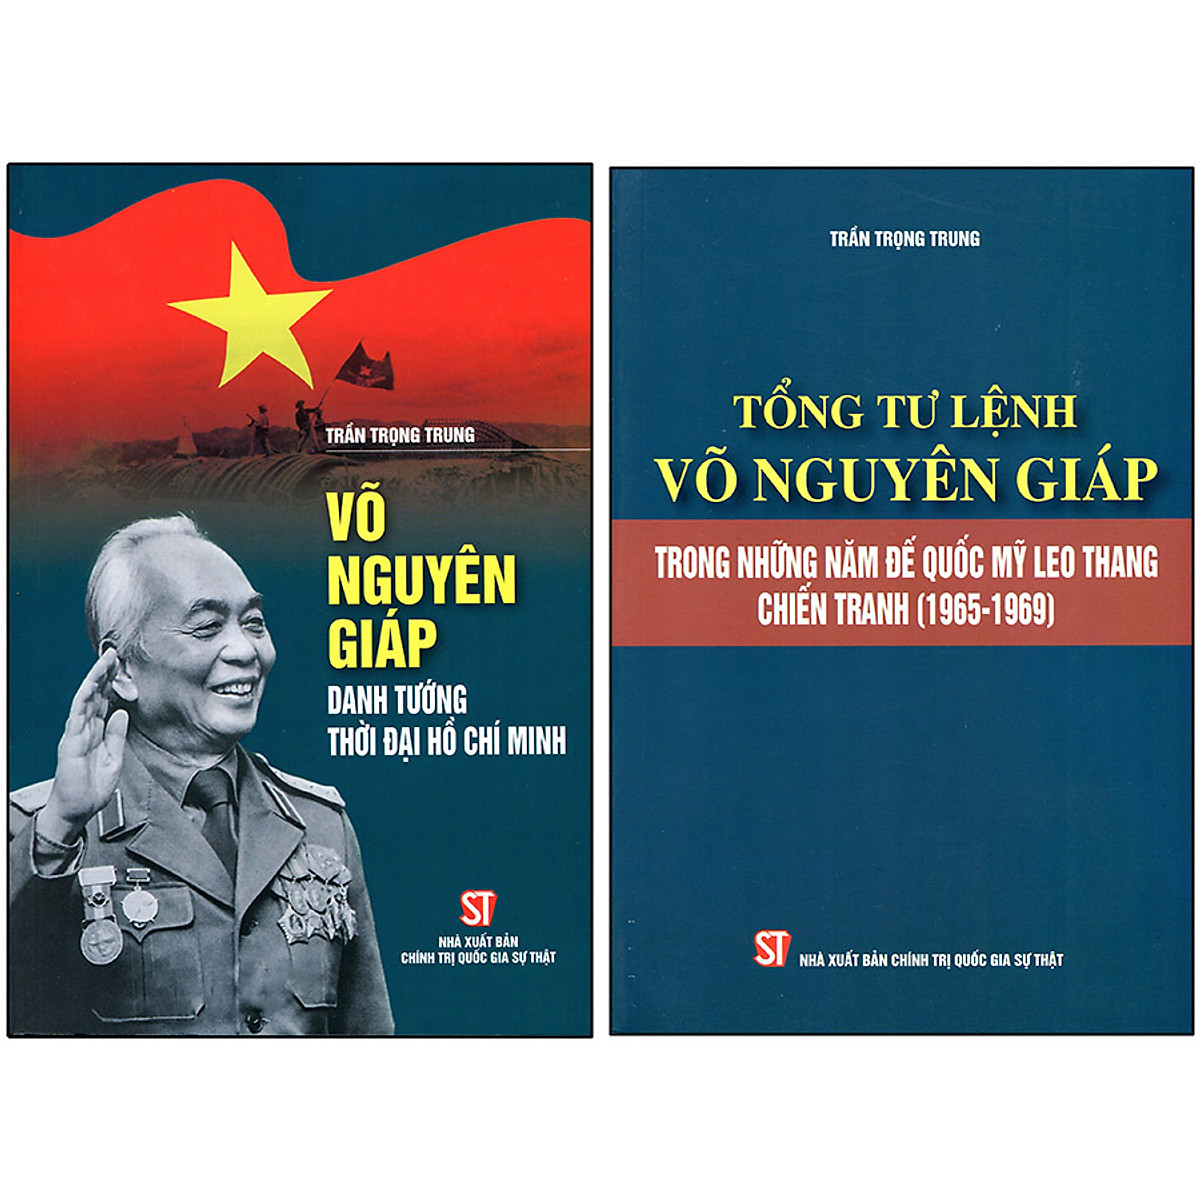 Combo 2 Cuốn: Võ Nguyên Giáp Danh Tướng Thời Đại Hồ Chí Minh + Tổng Tư Lệnh Võ Nguyên Giáp Trong Những Năm Đế Quốc Mỹ Leo Thang Chiến Tranh (1965-1969)(Tái Bản)